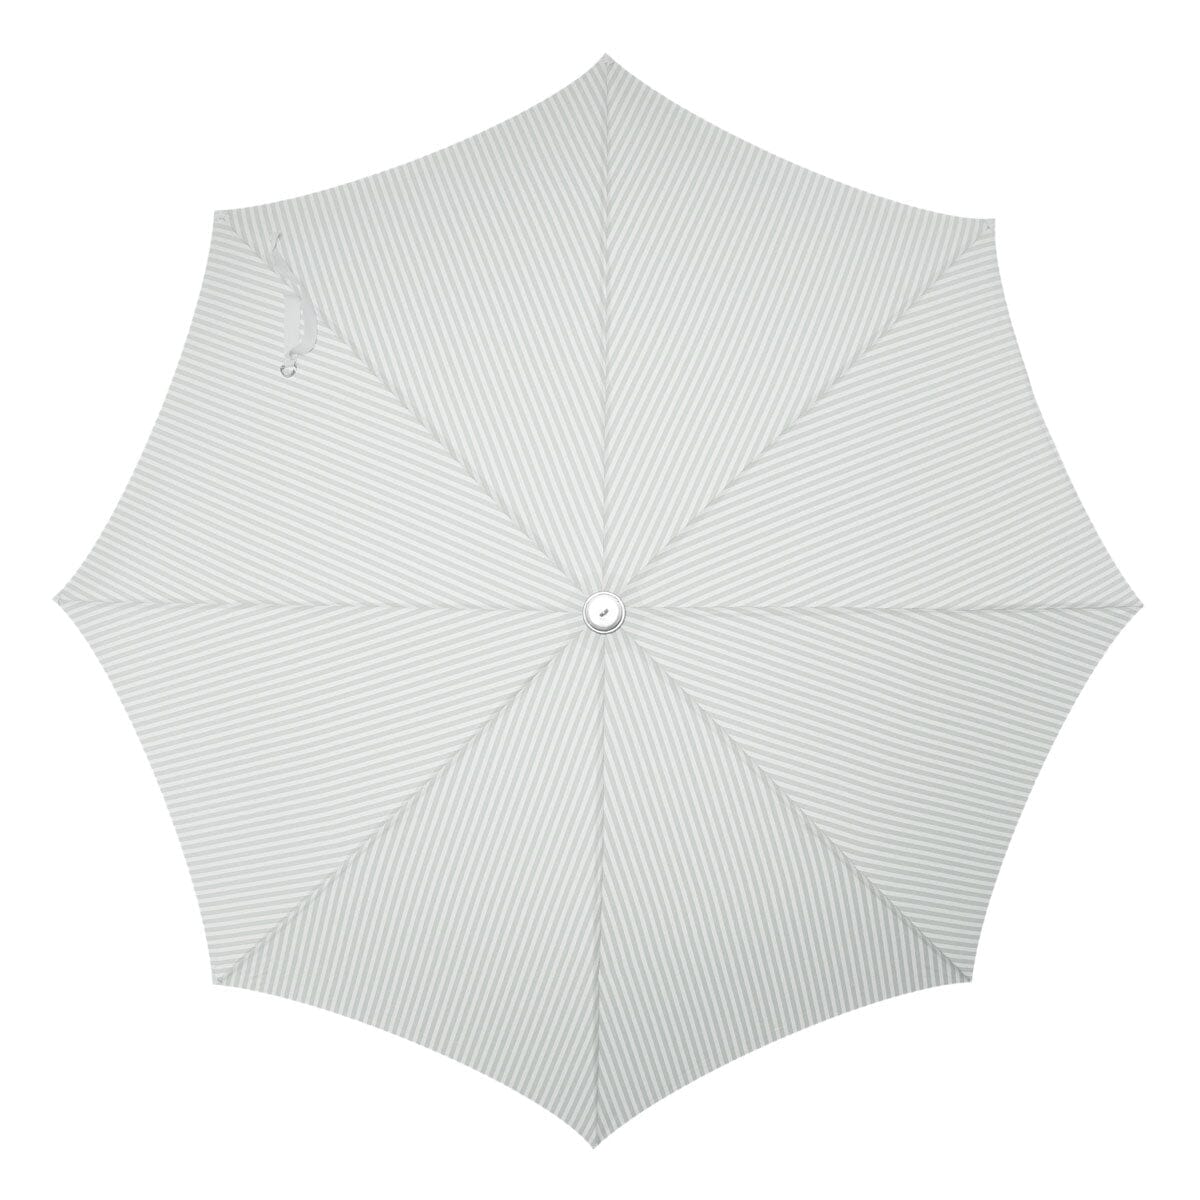 The Premium Beach Umbrella - Lauren's Sage Stripe Premium Beach Umbrella Business & Pleasure Co 